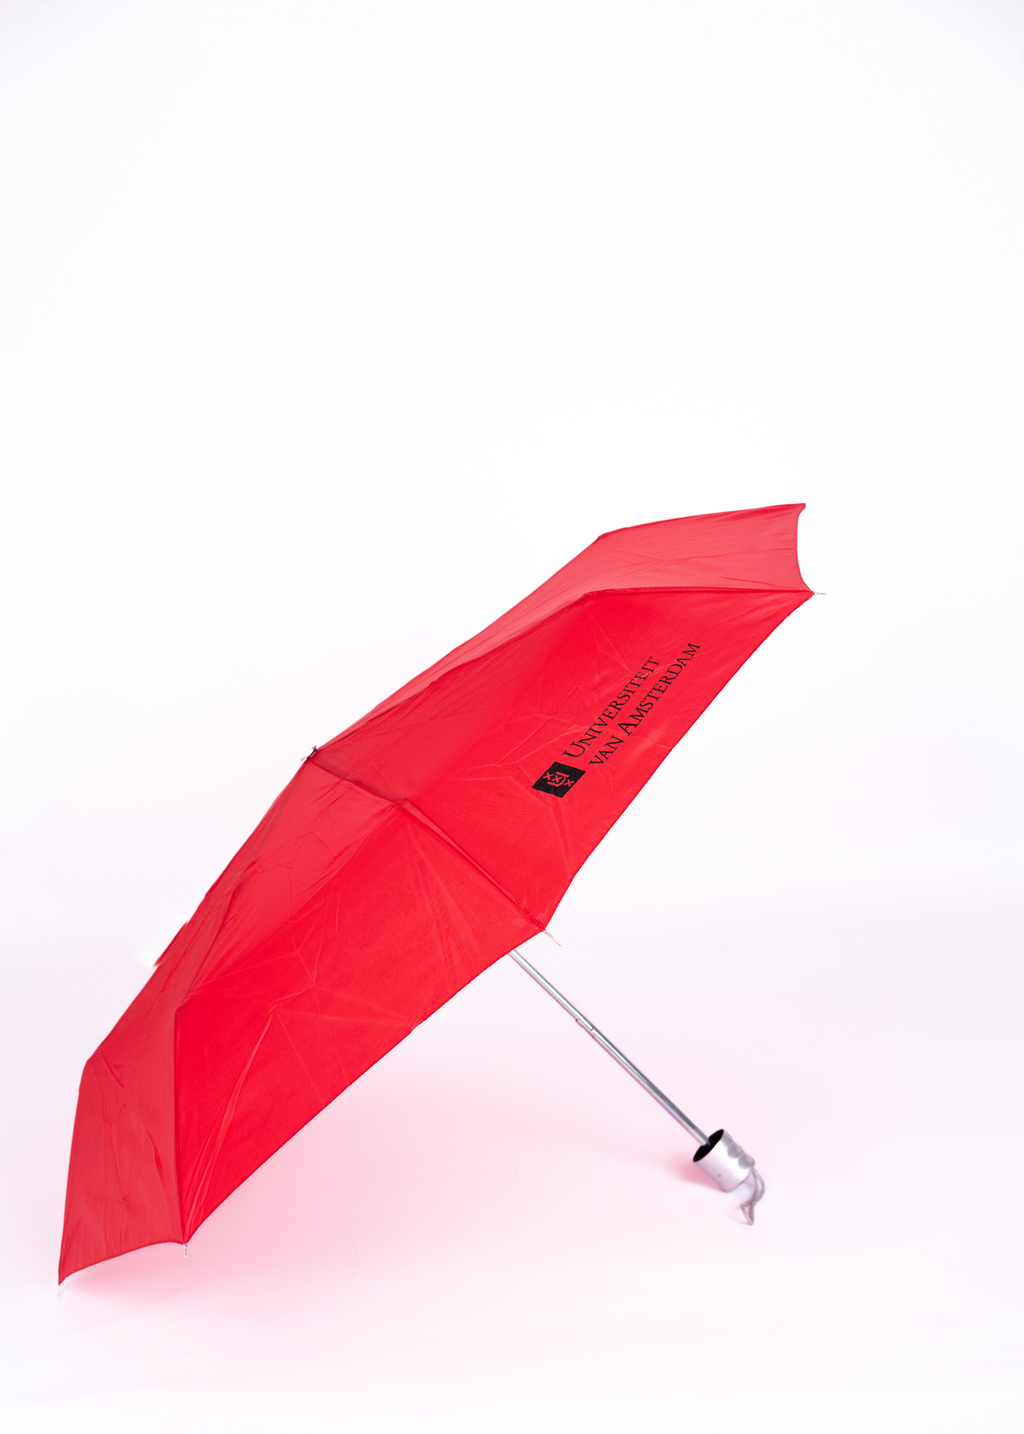 Paraplu rood en zwart  met het Universiteit van Amsterdam logo